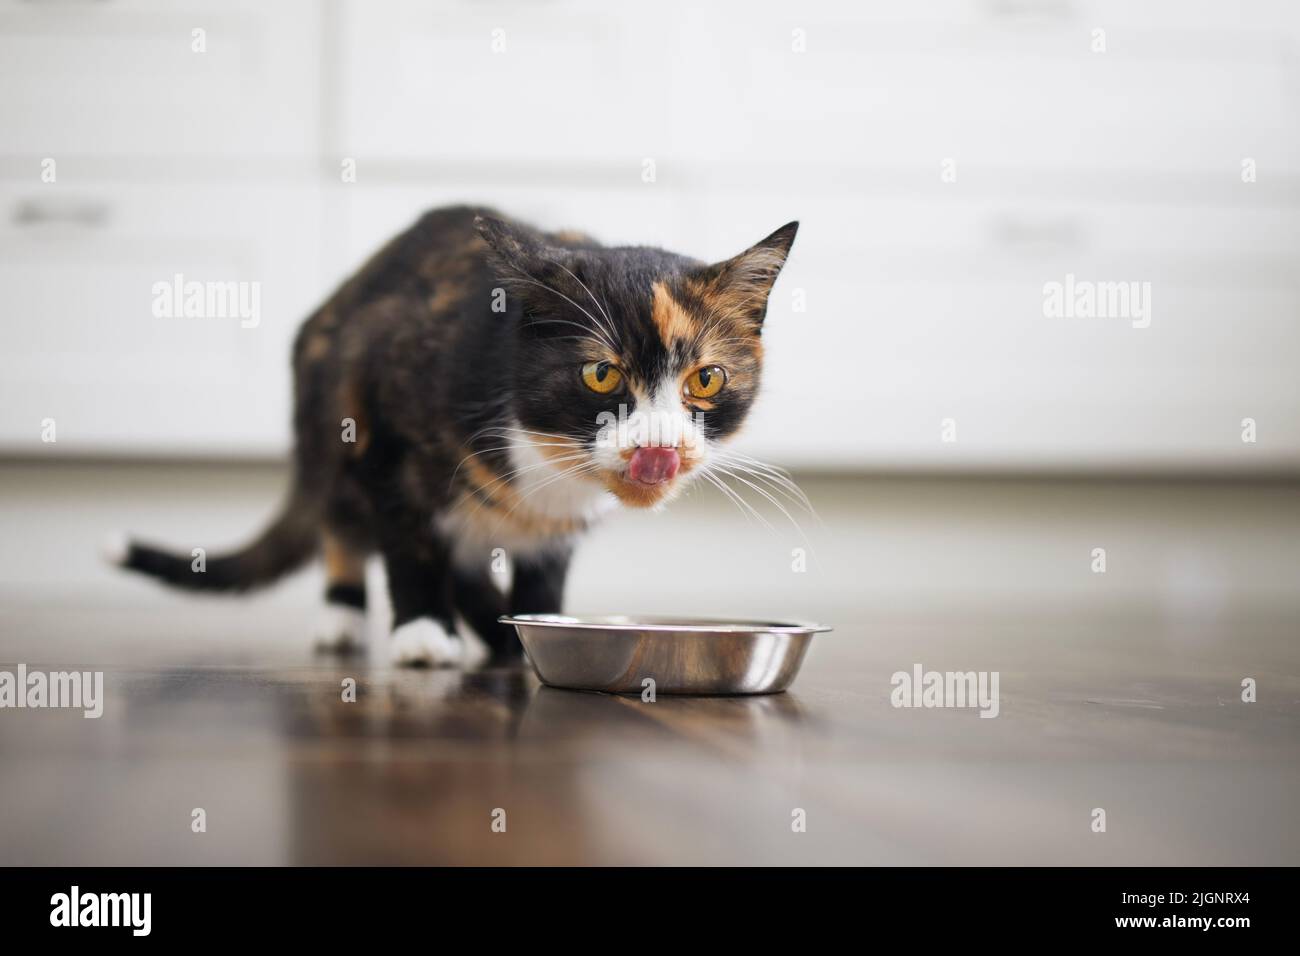 La vie domestique avec les animaux. Mignon chat brun manger dans un bol en métal à la maison. Banque D'Images